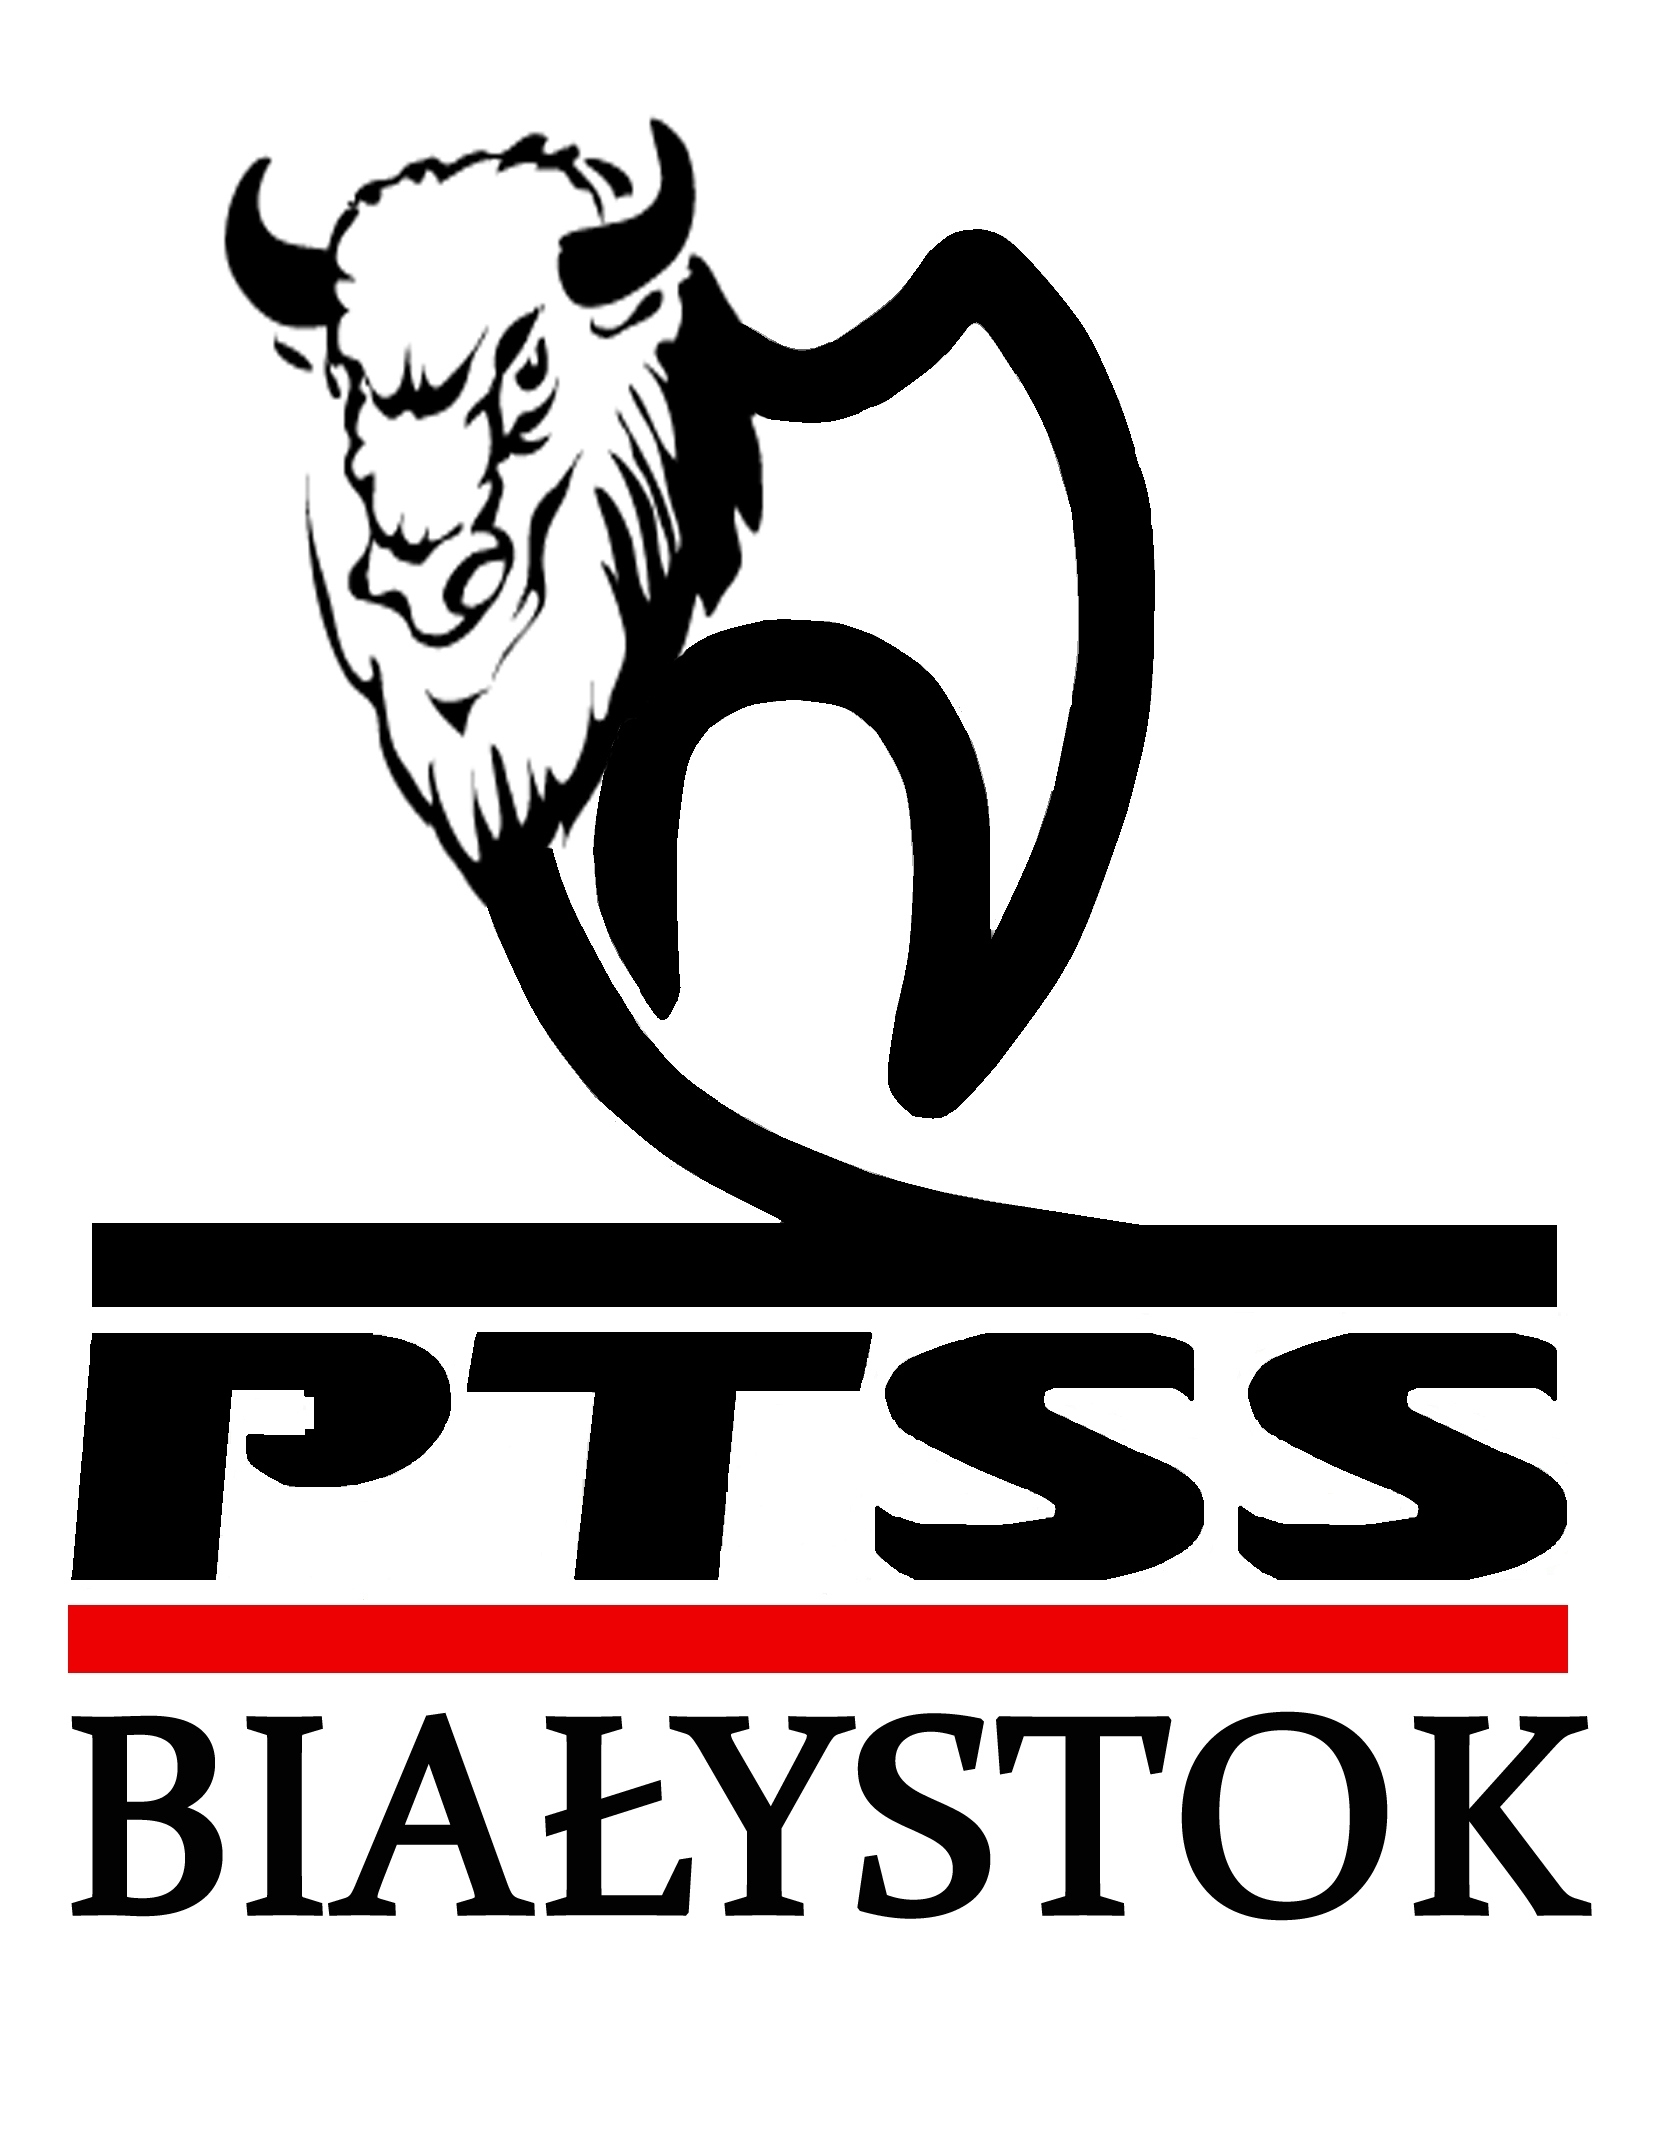 Logotyp Polskiego Towarzystwa Studentów Stomatologii.